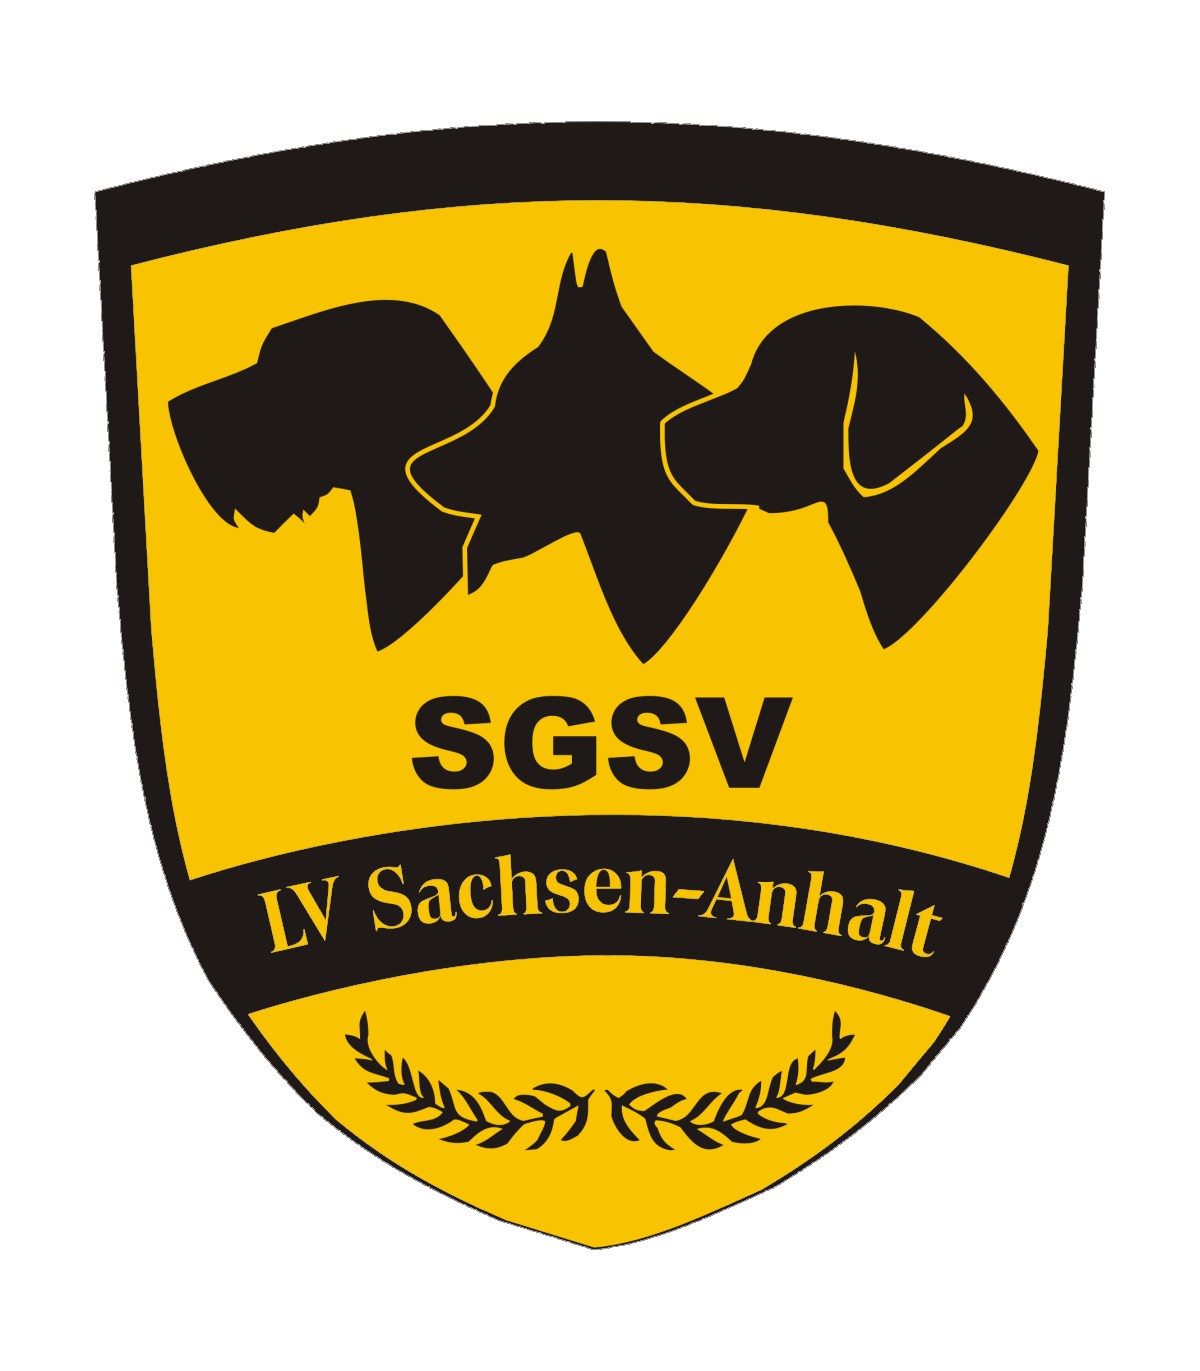 Logo_SGSV_LV_S-A